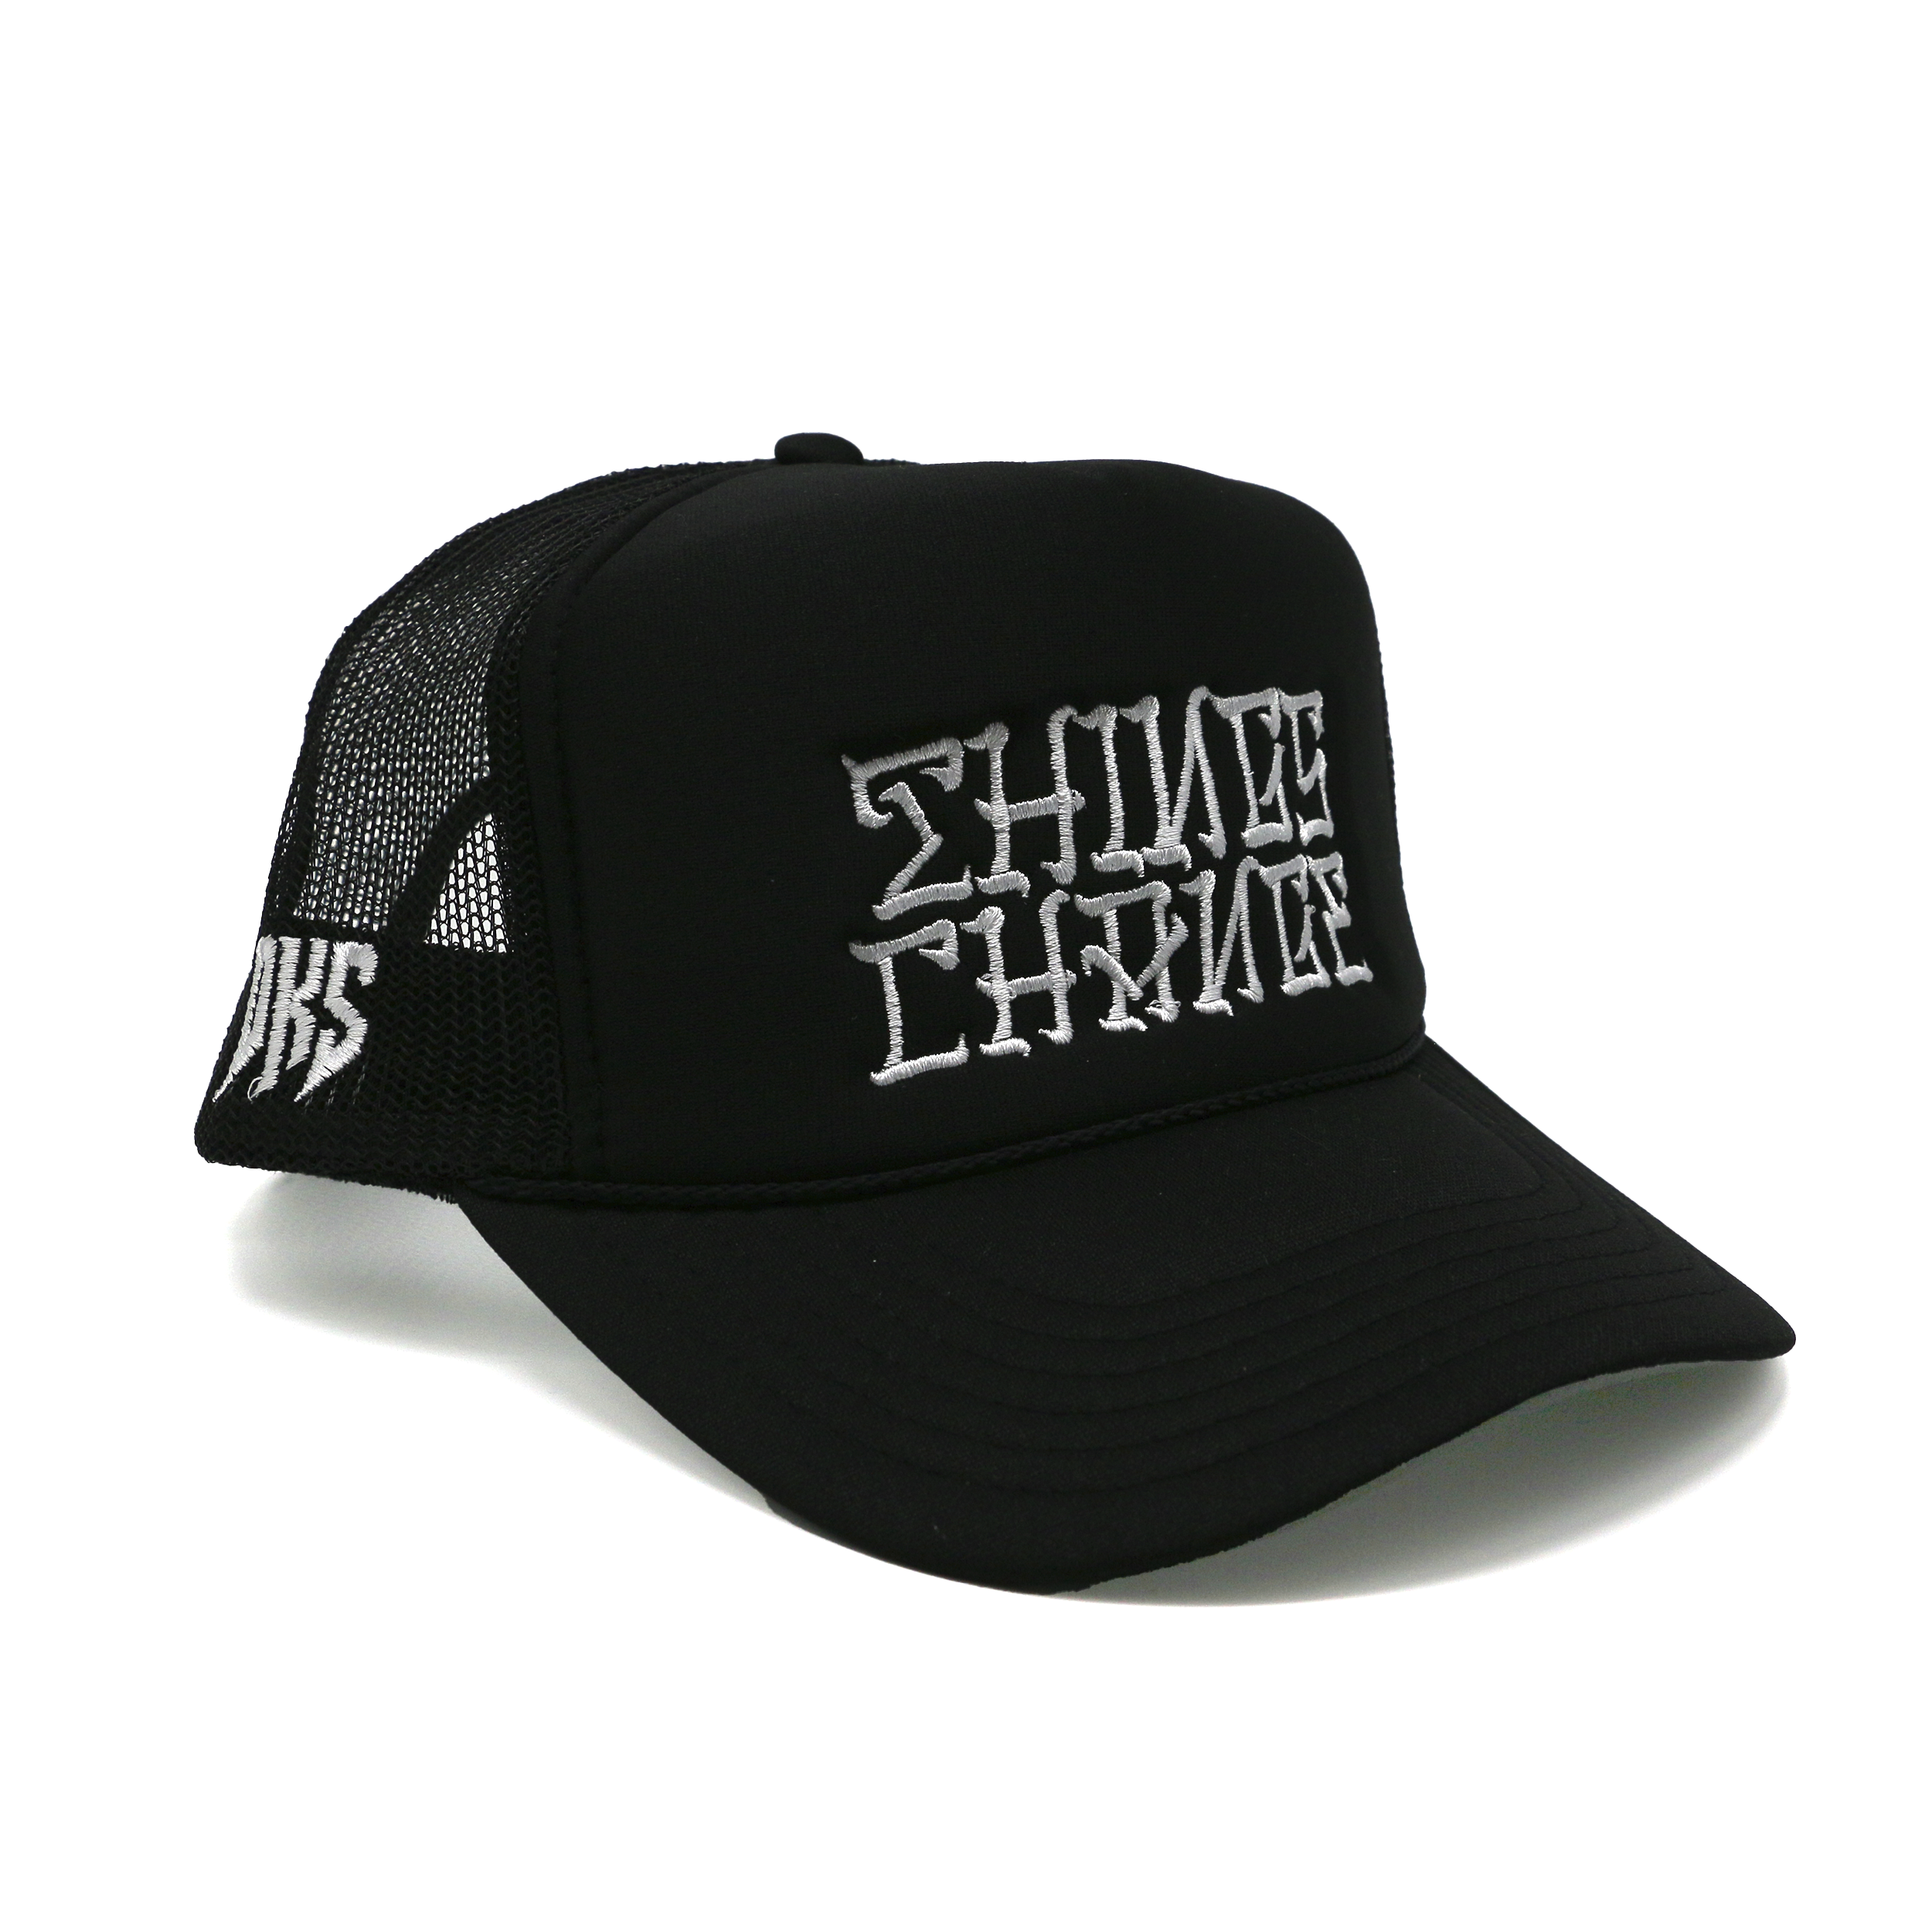 DKS "Things Change" Trucker Hat (Black/White)